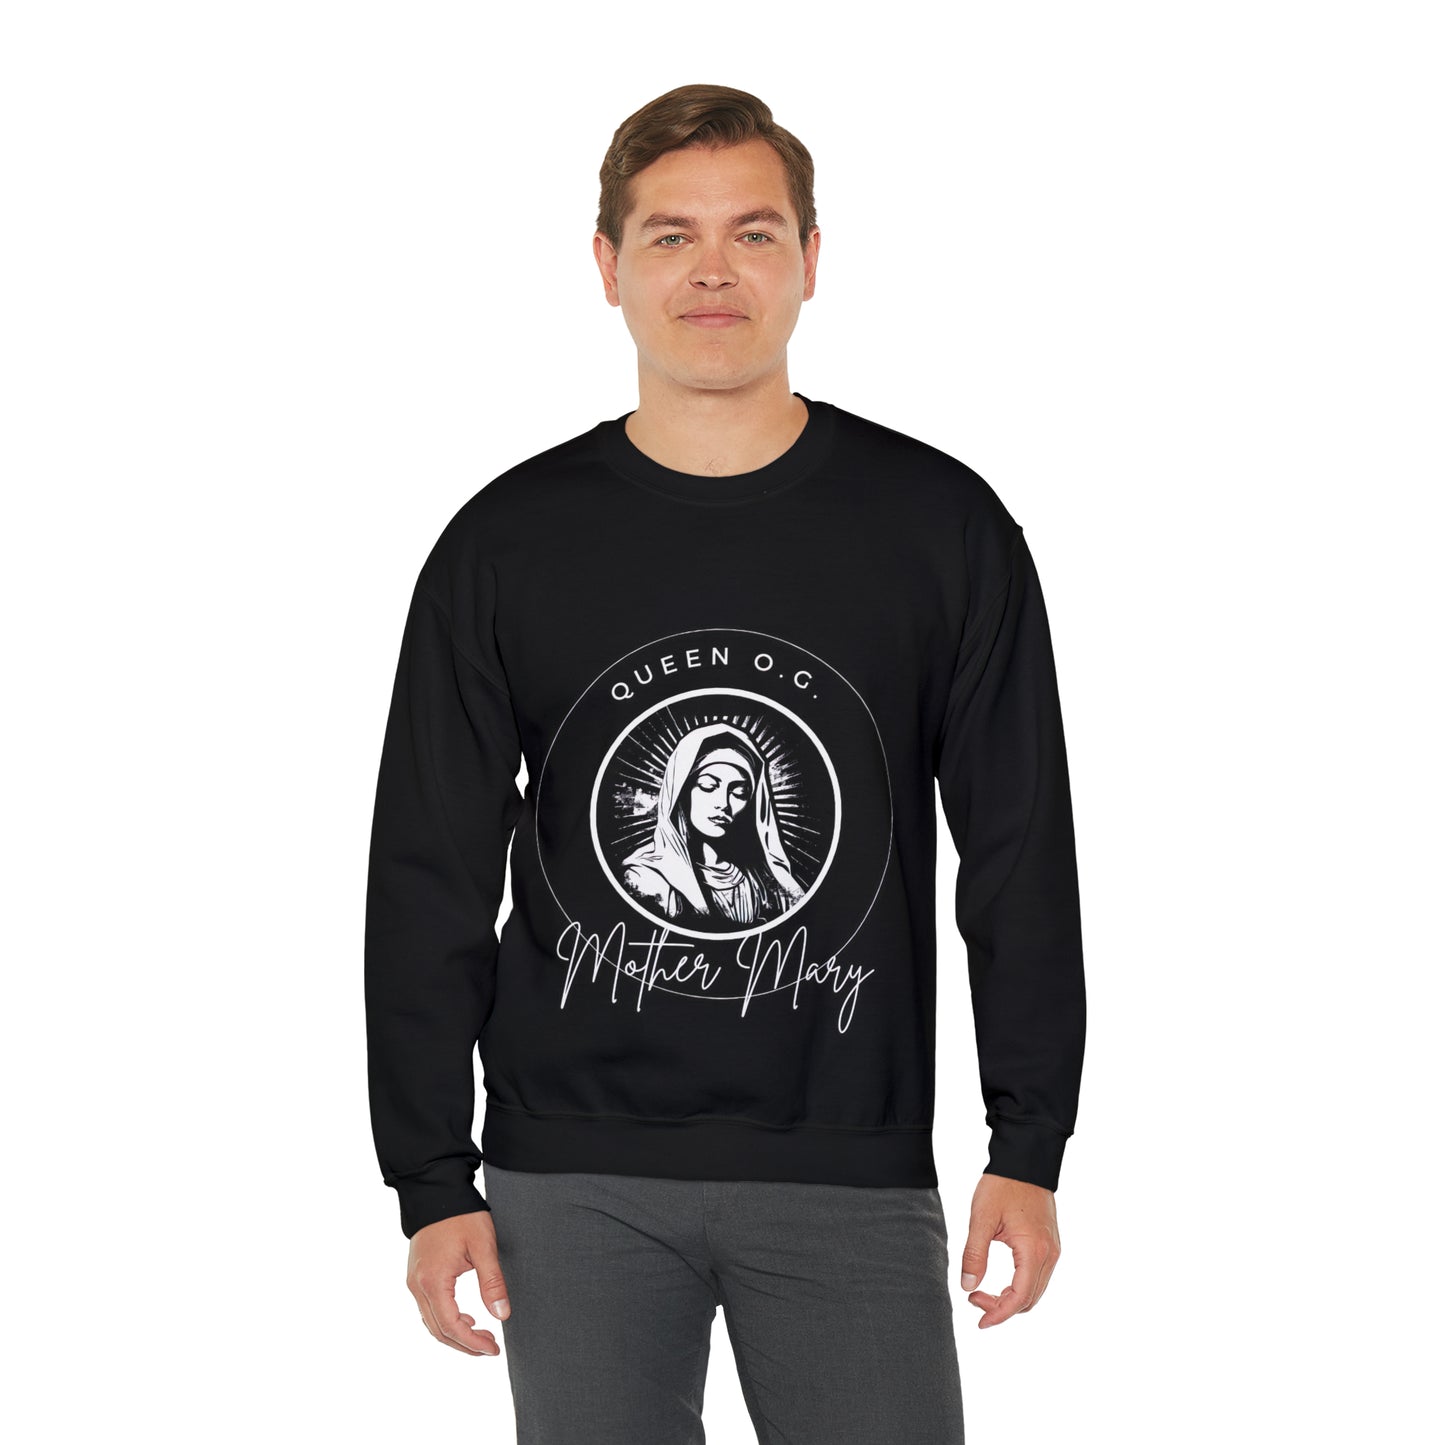 "Mother Mary: The Queen O.G -  Crewneck Sweatshirt - Men